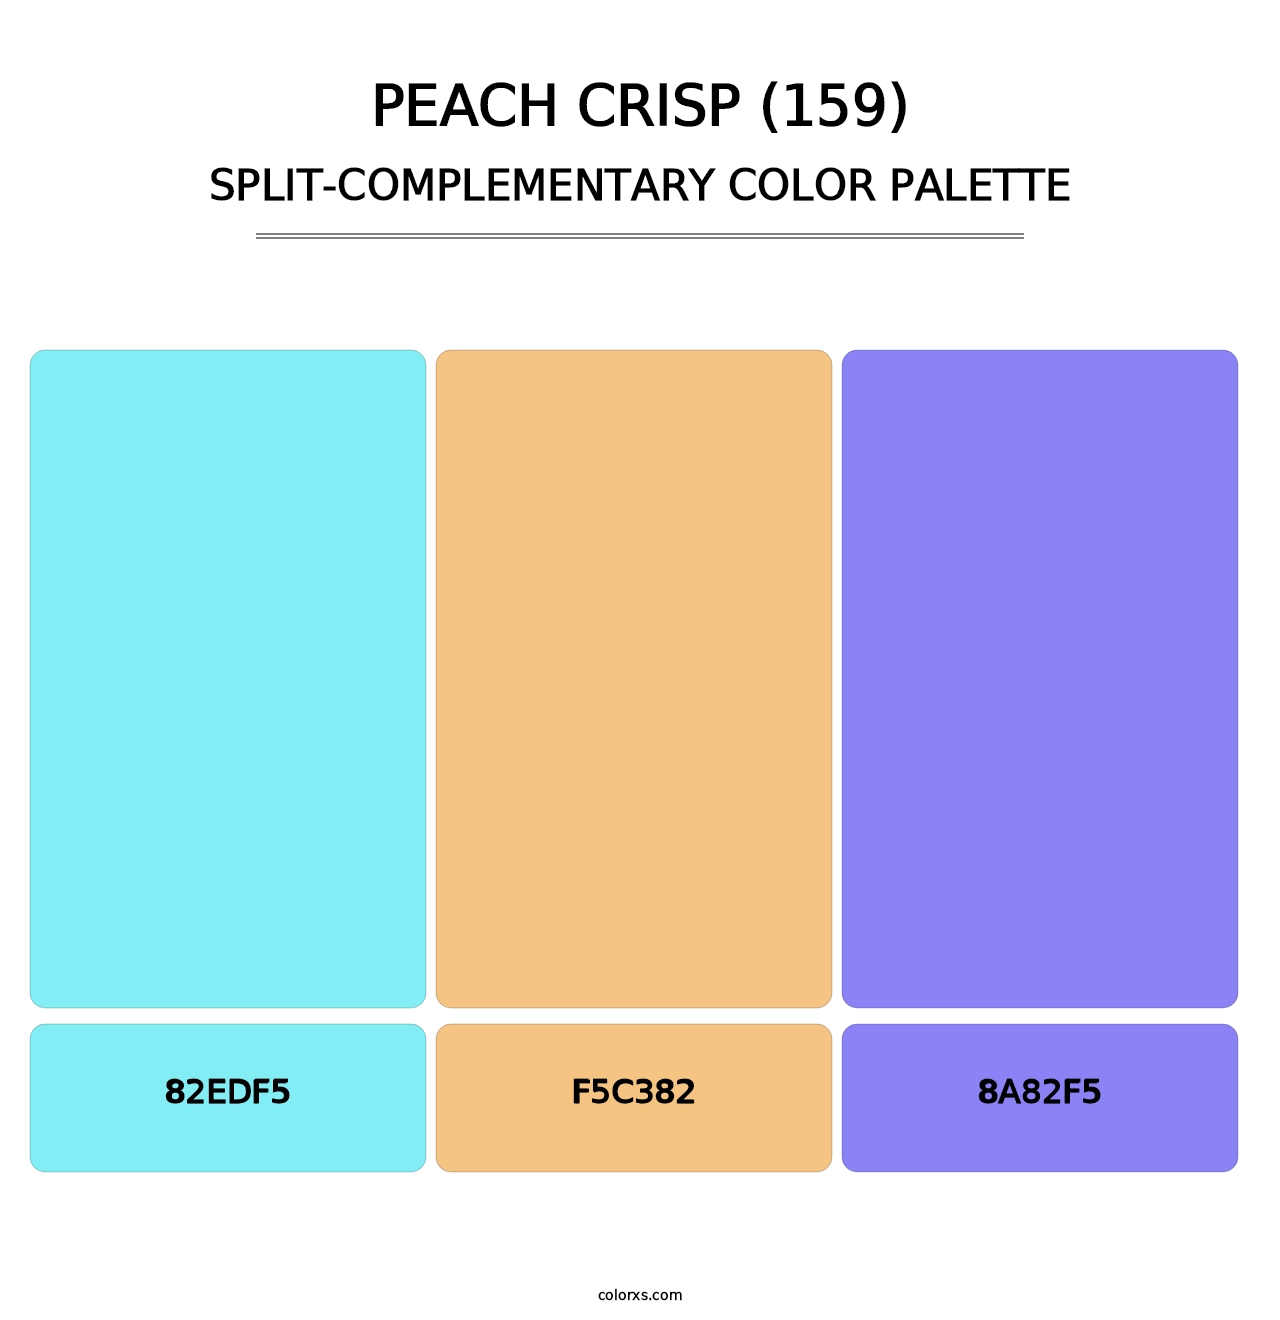 Peach Crisp (159) - Split-Complementary Color Palette